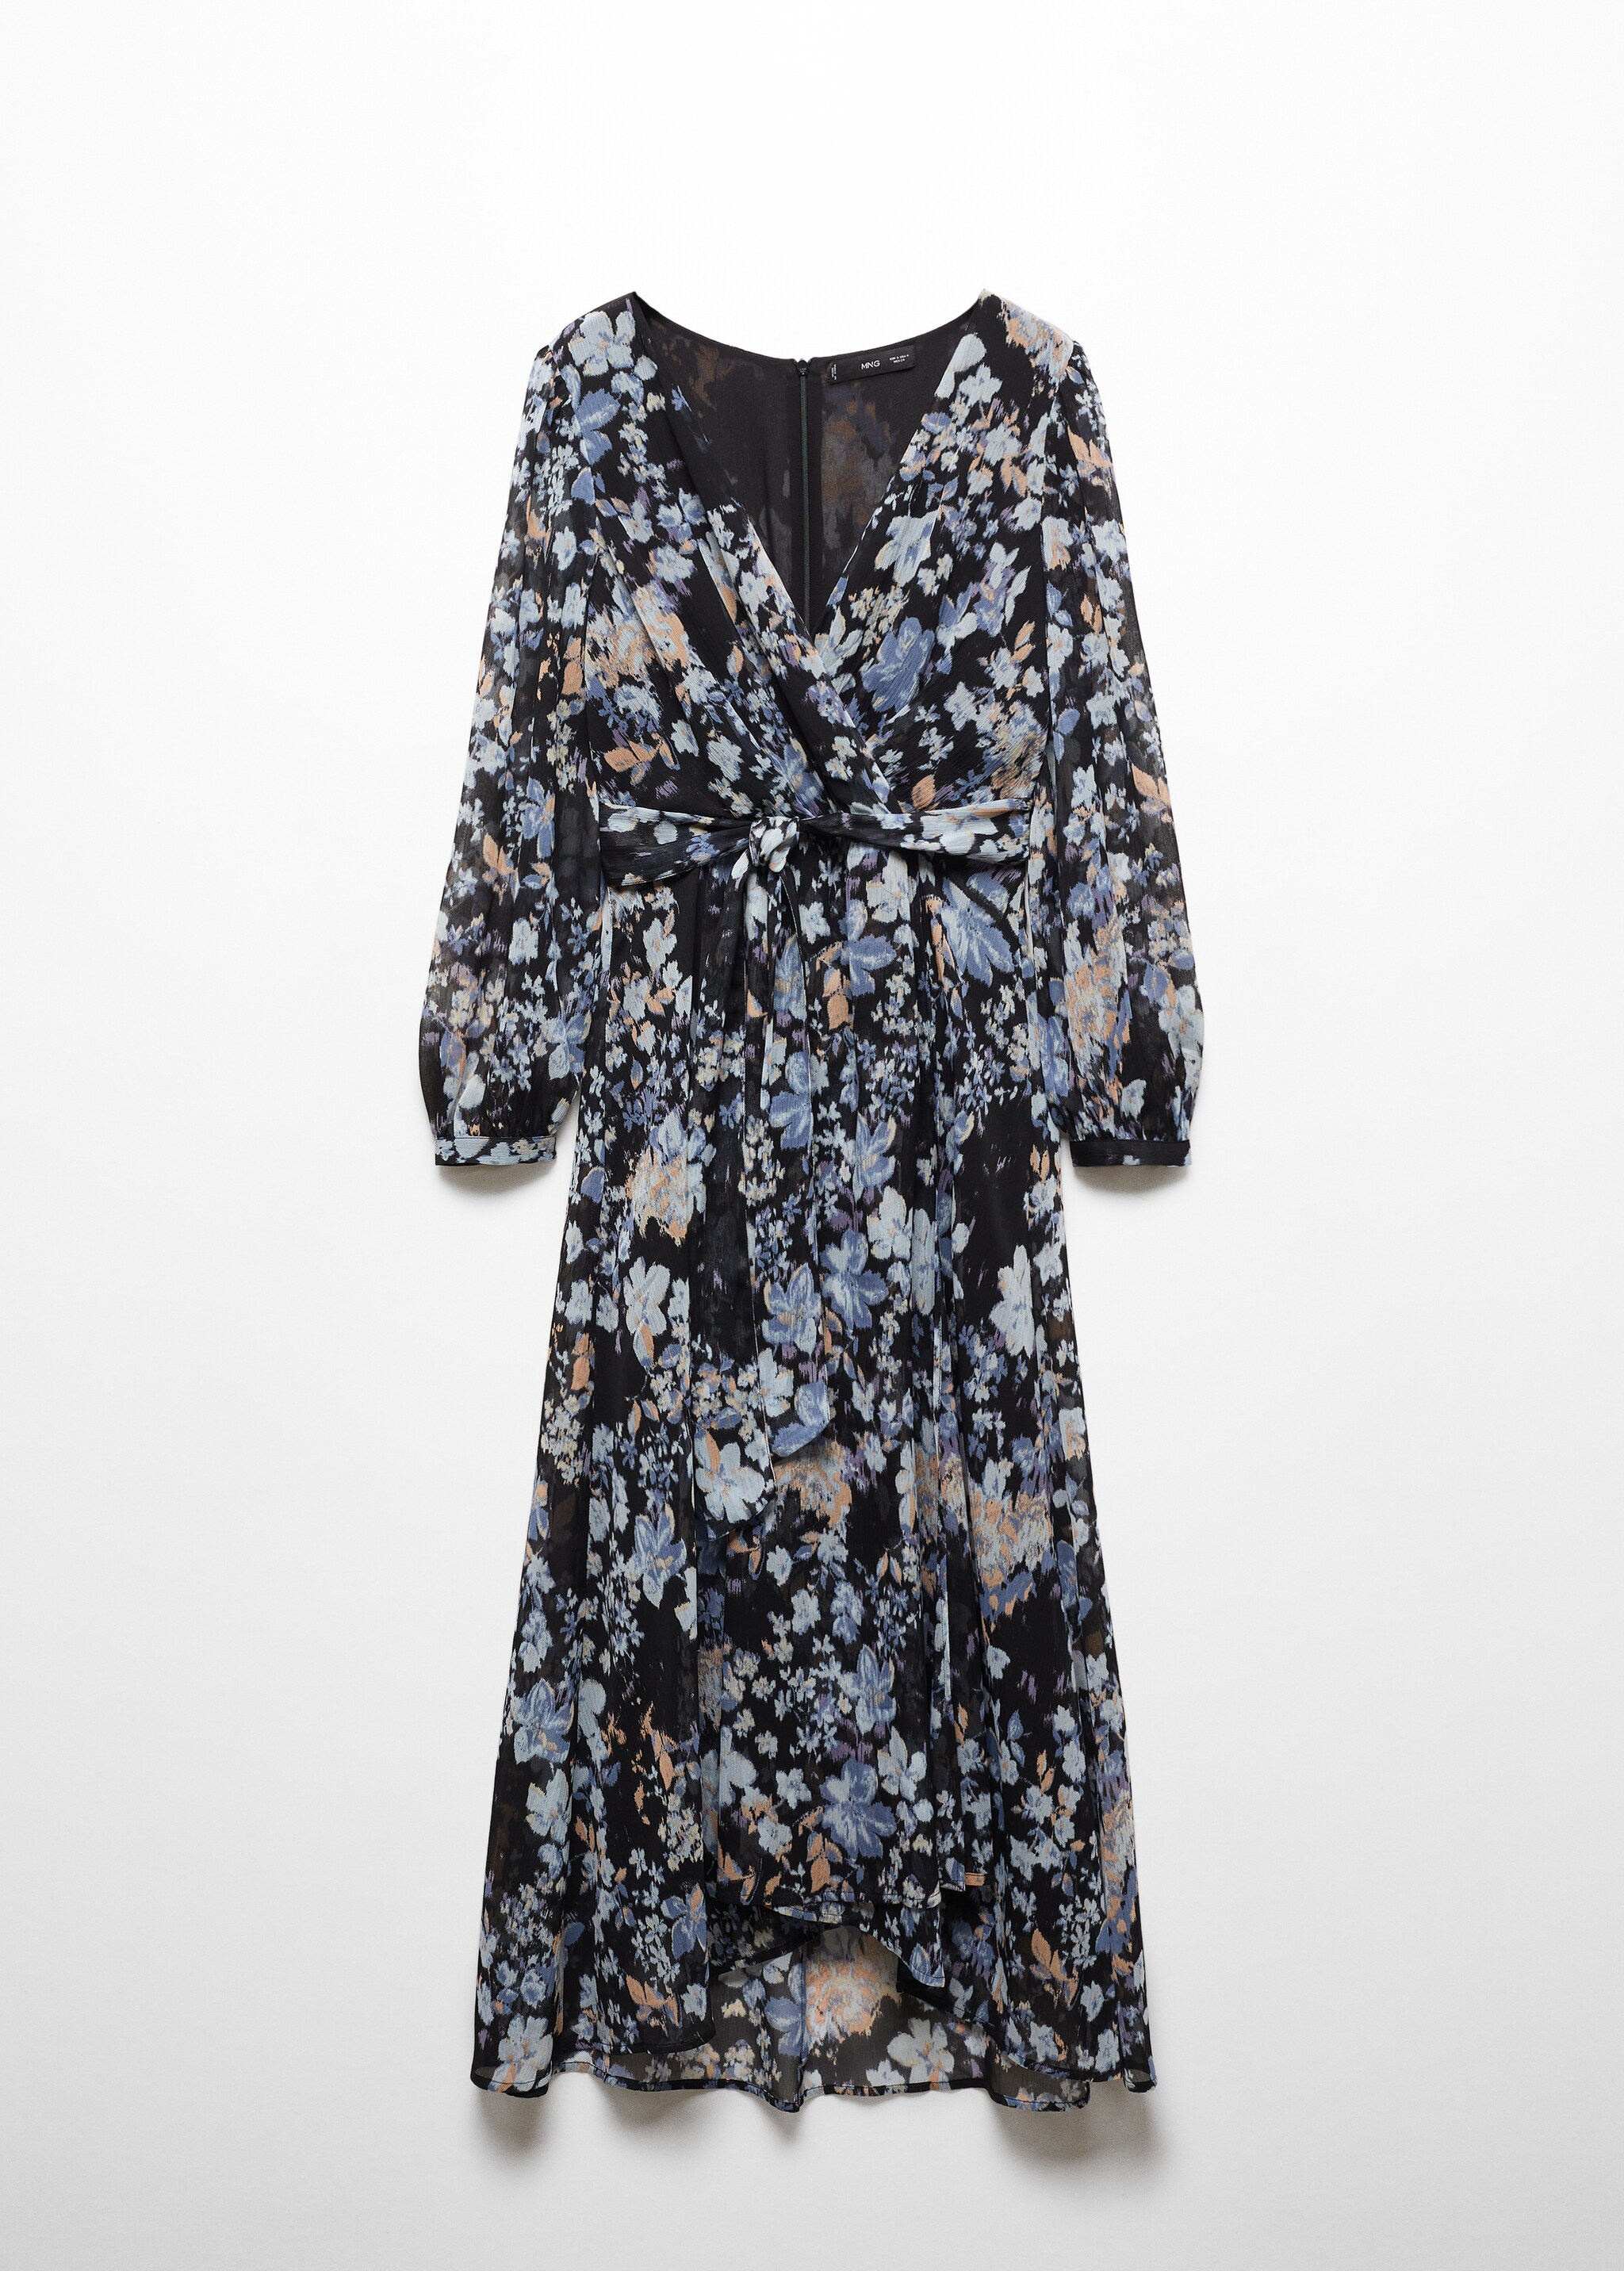 Ριχτό φόρεμα με λουλουδάτο σχέδιο - Προϊόν χωρίς μοντέλο